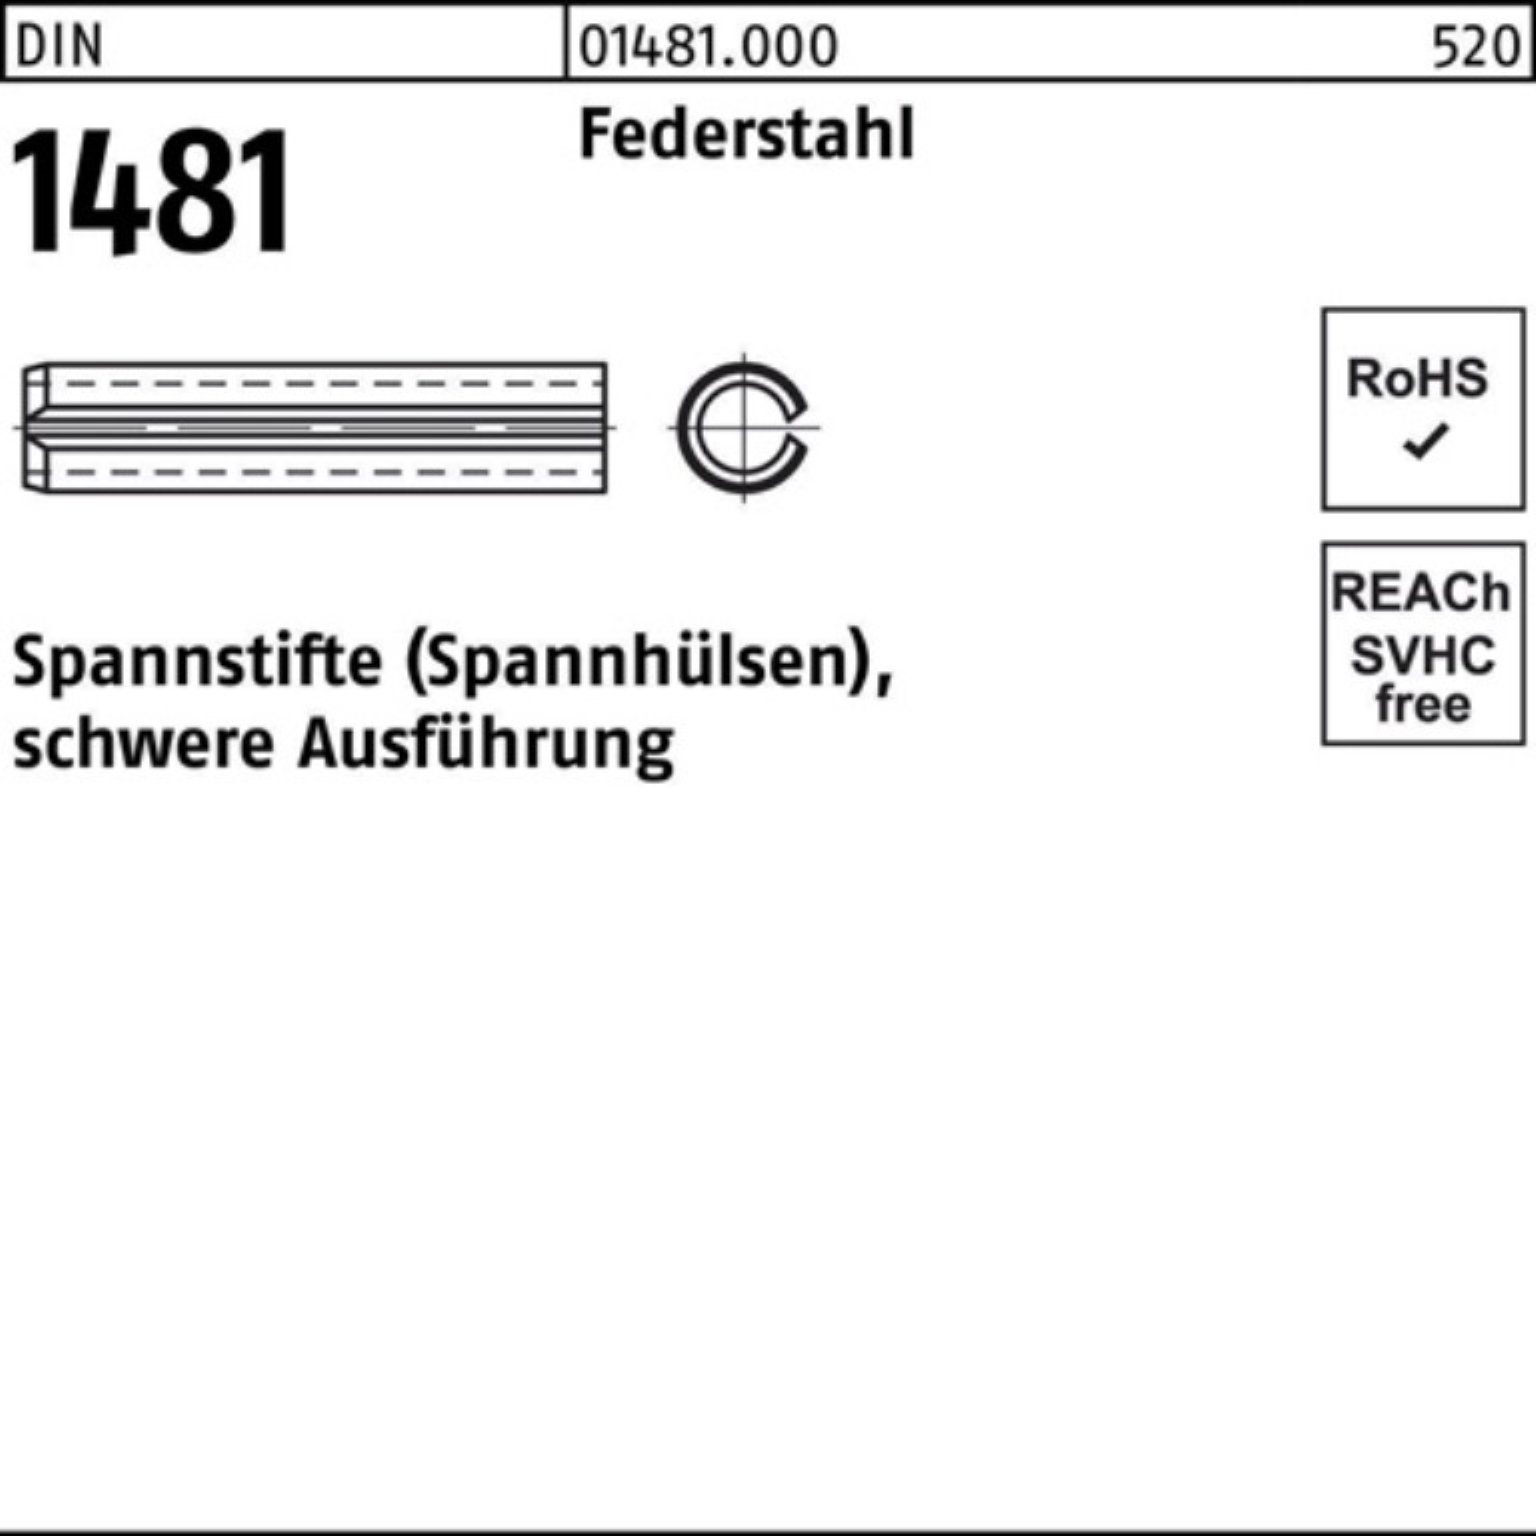 Reyher Spannstift 100er Pack Spannstift DIN 1481 10x 12 Federstahl schwere Ausführung 1